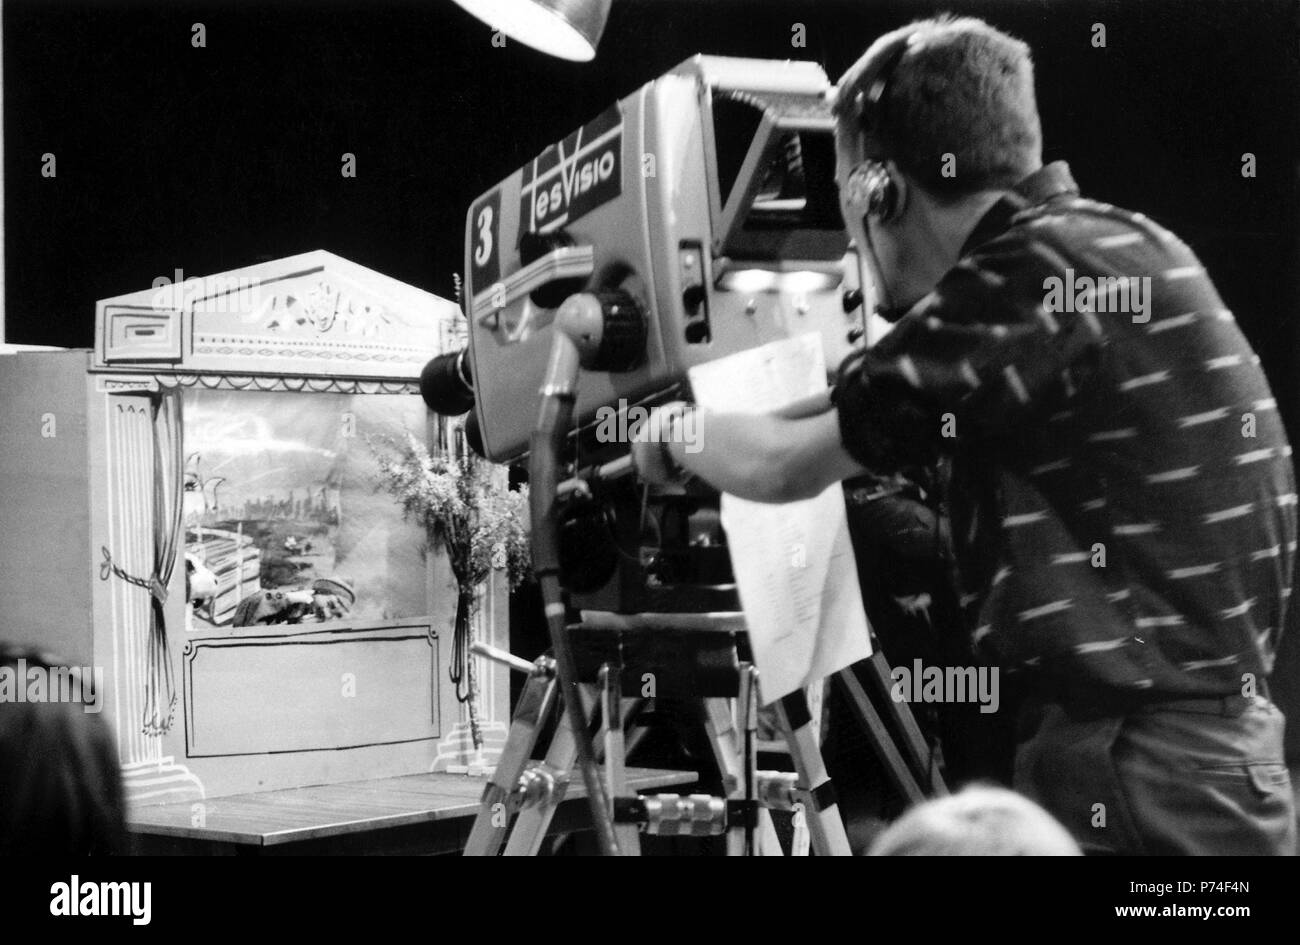 Tesvisio, 1957-1965, le premier canal de télévision en Finlande. L'Tesvisio Tesvisio caméraman au travail, 1957-1965, le premier canal de télévision en Finlande. Cameraman Matti Hämäläinen au travail dans le studio de télévision. Banque D'Images